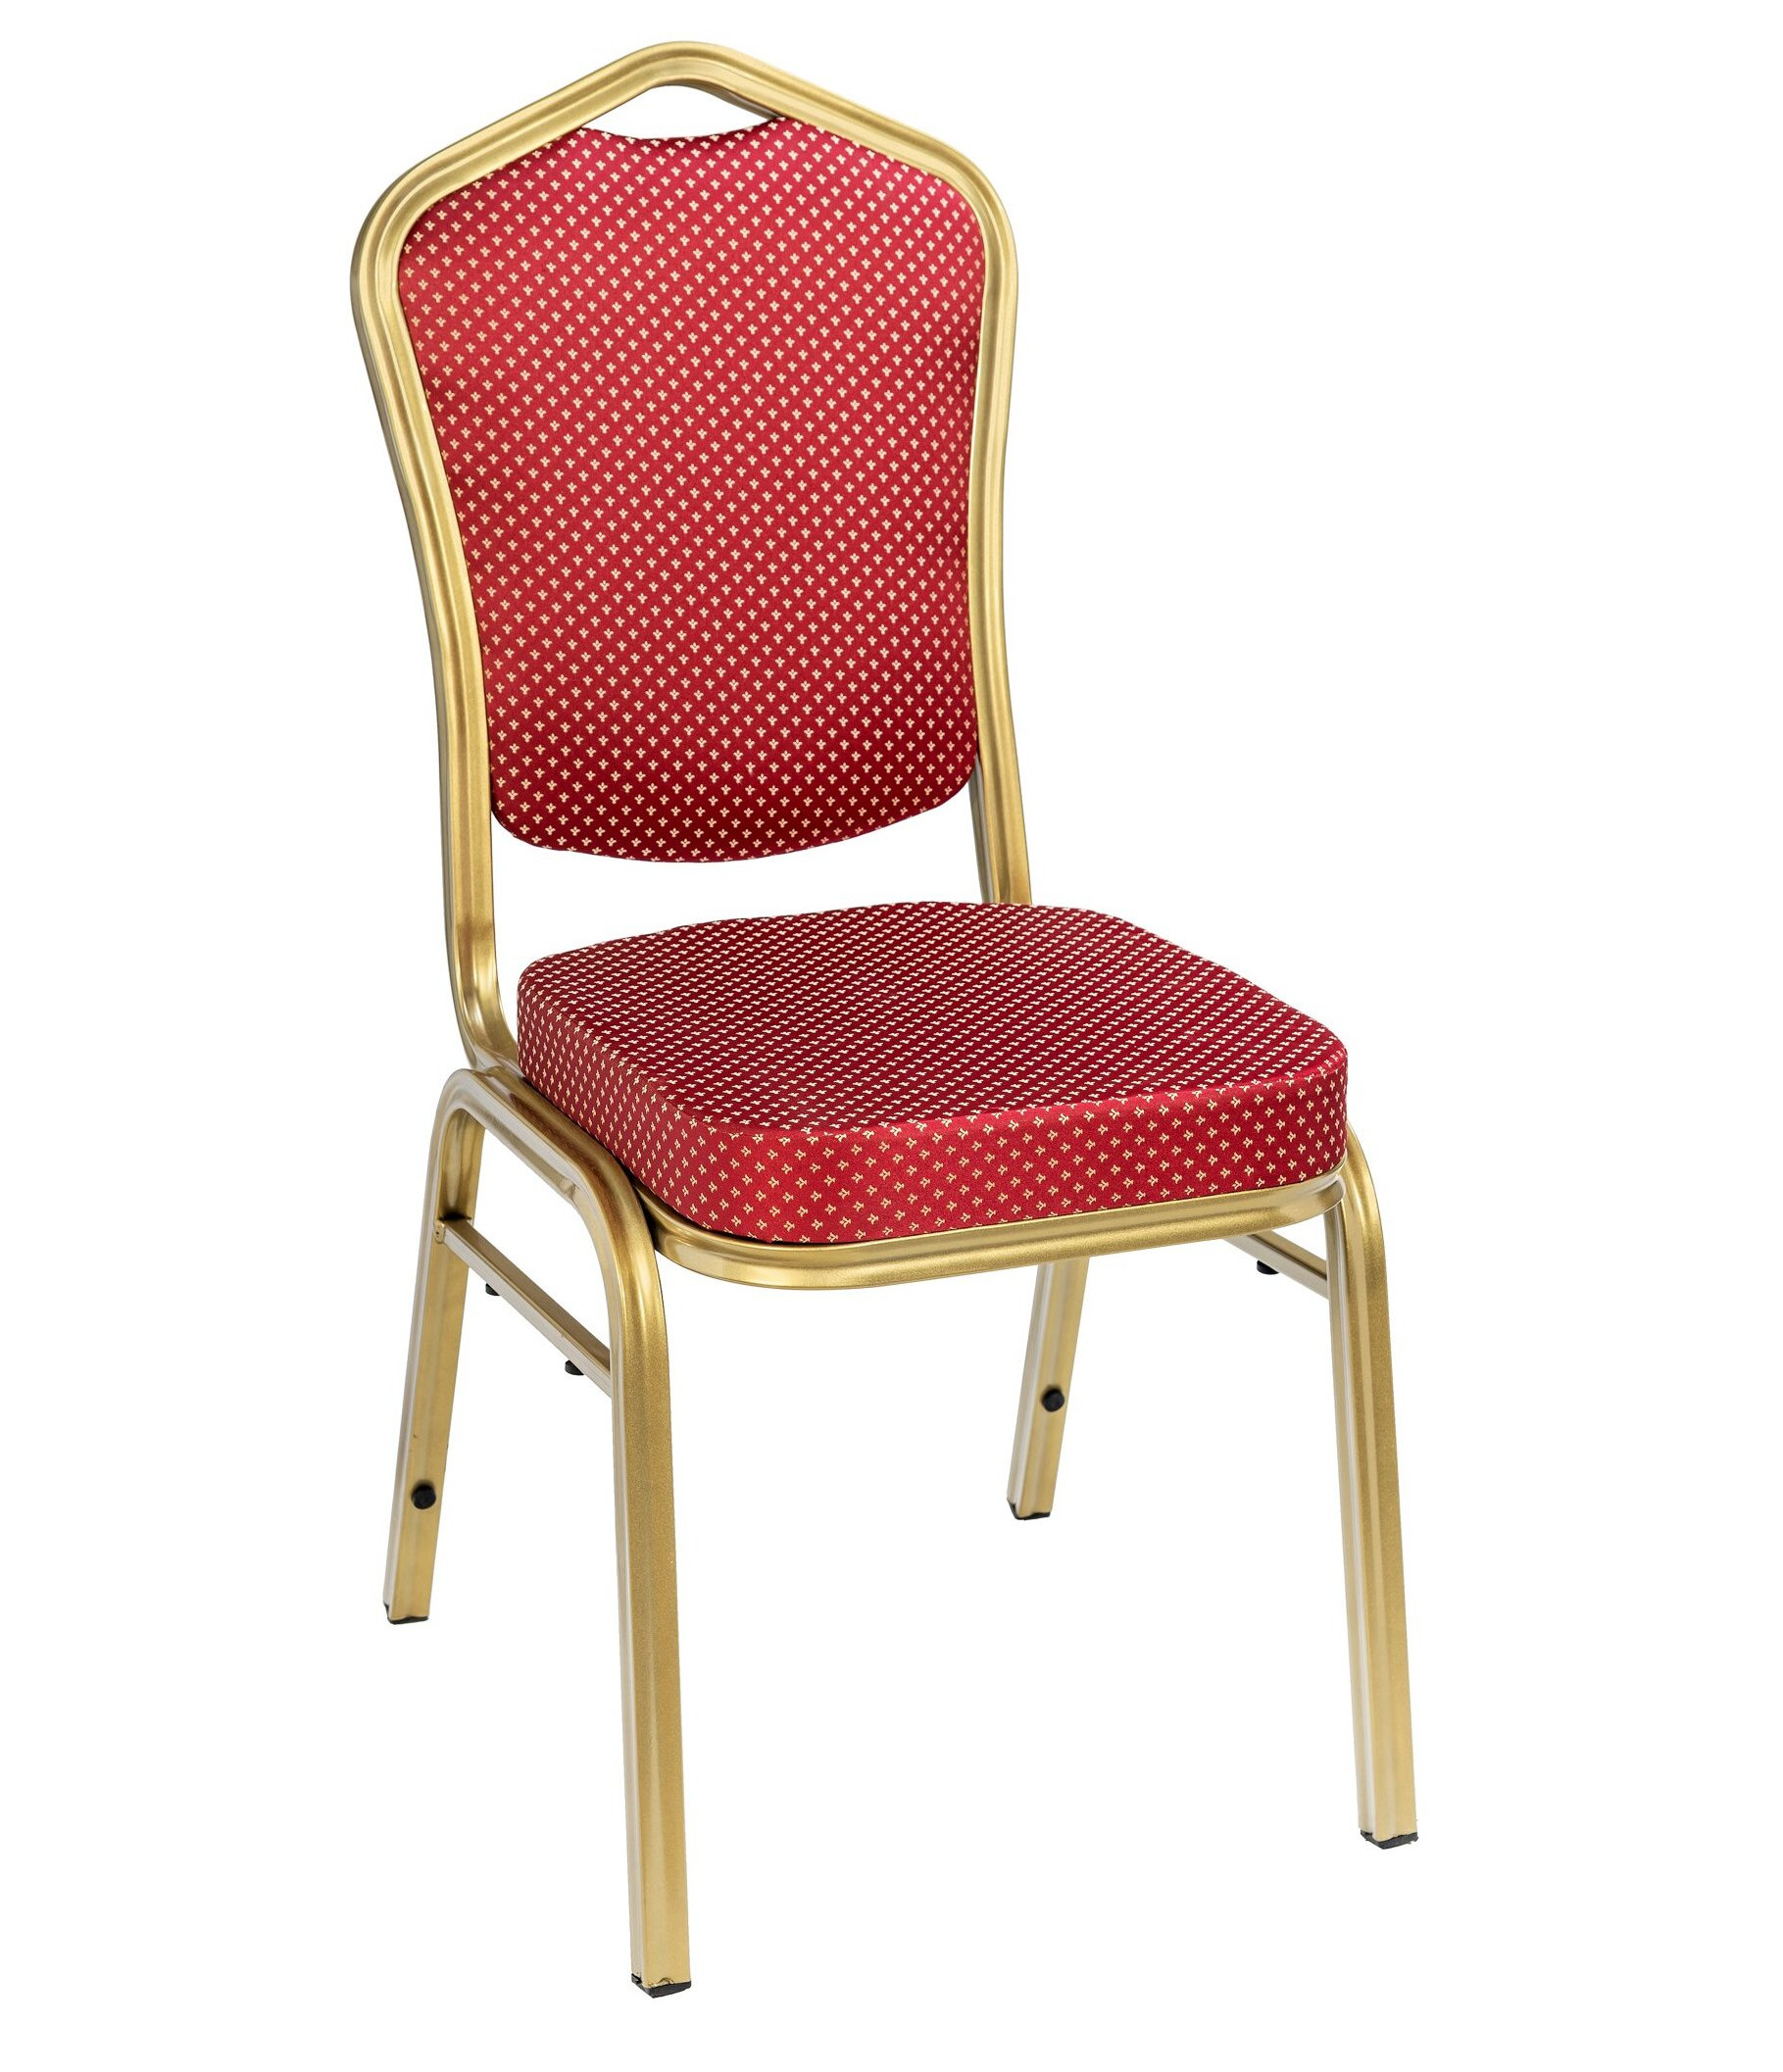 Банкетный стул Квадро 20 мм золотой, красная корона